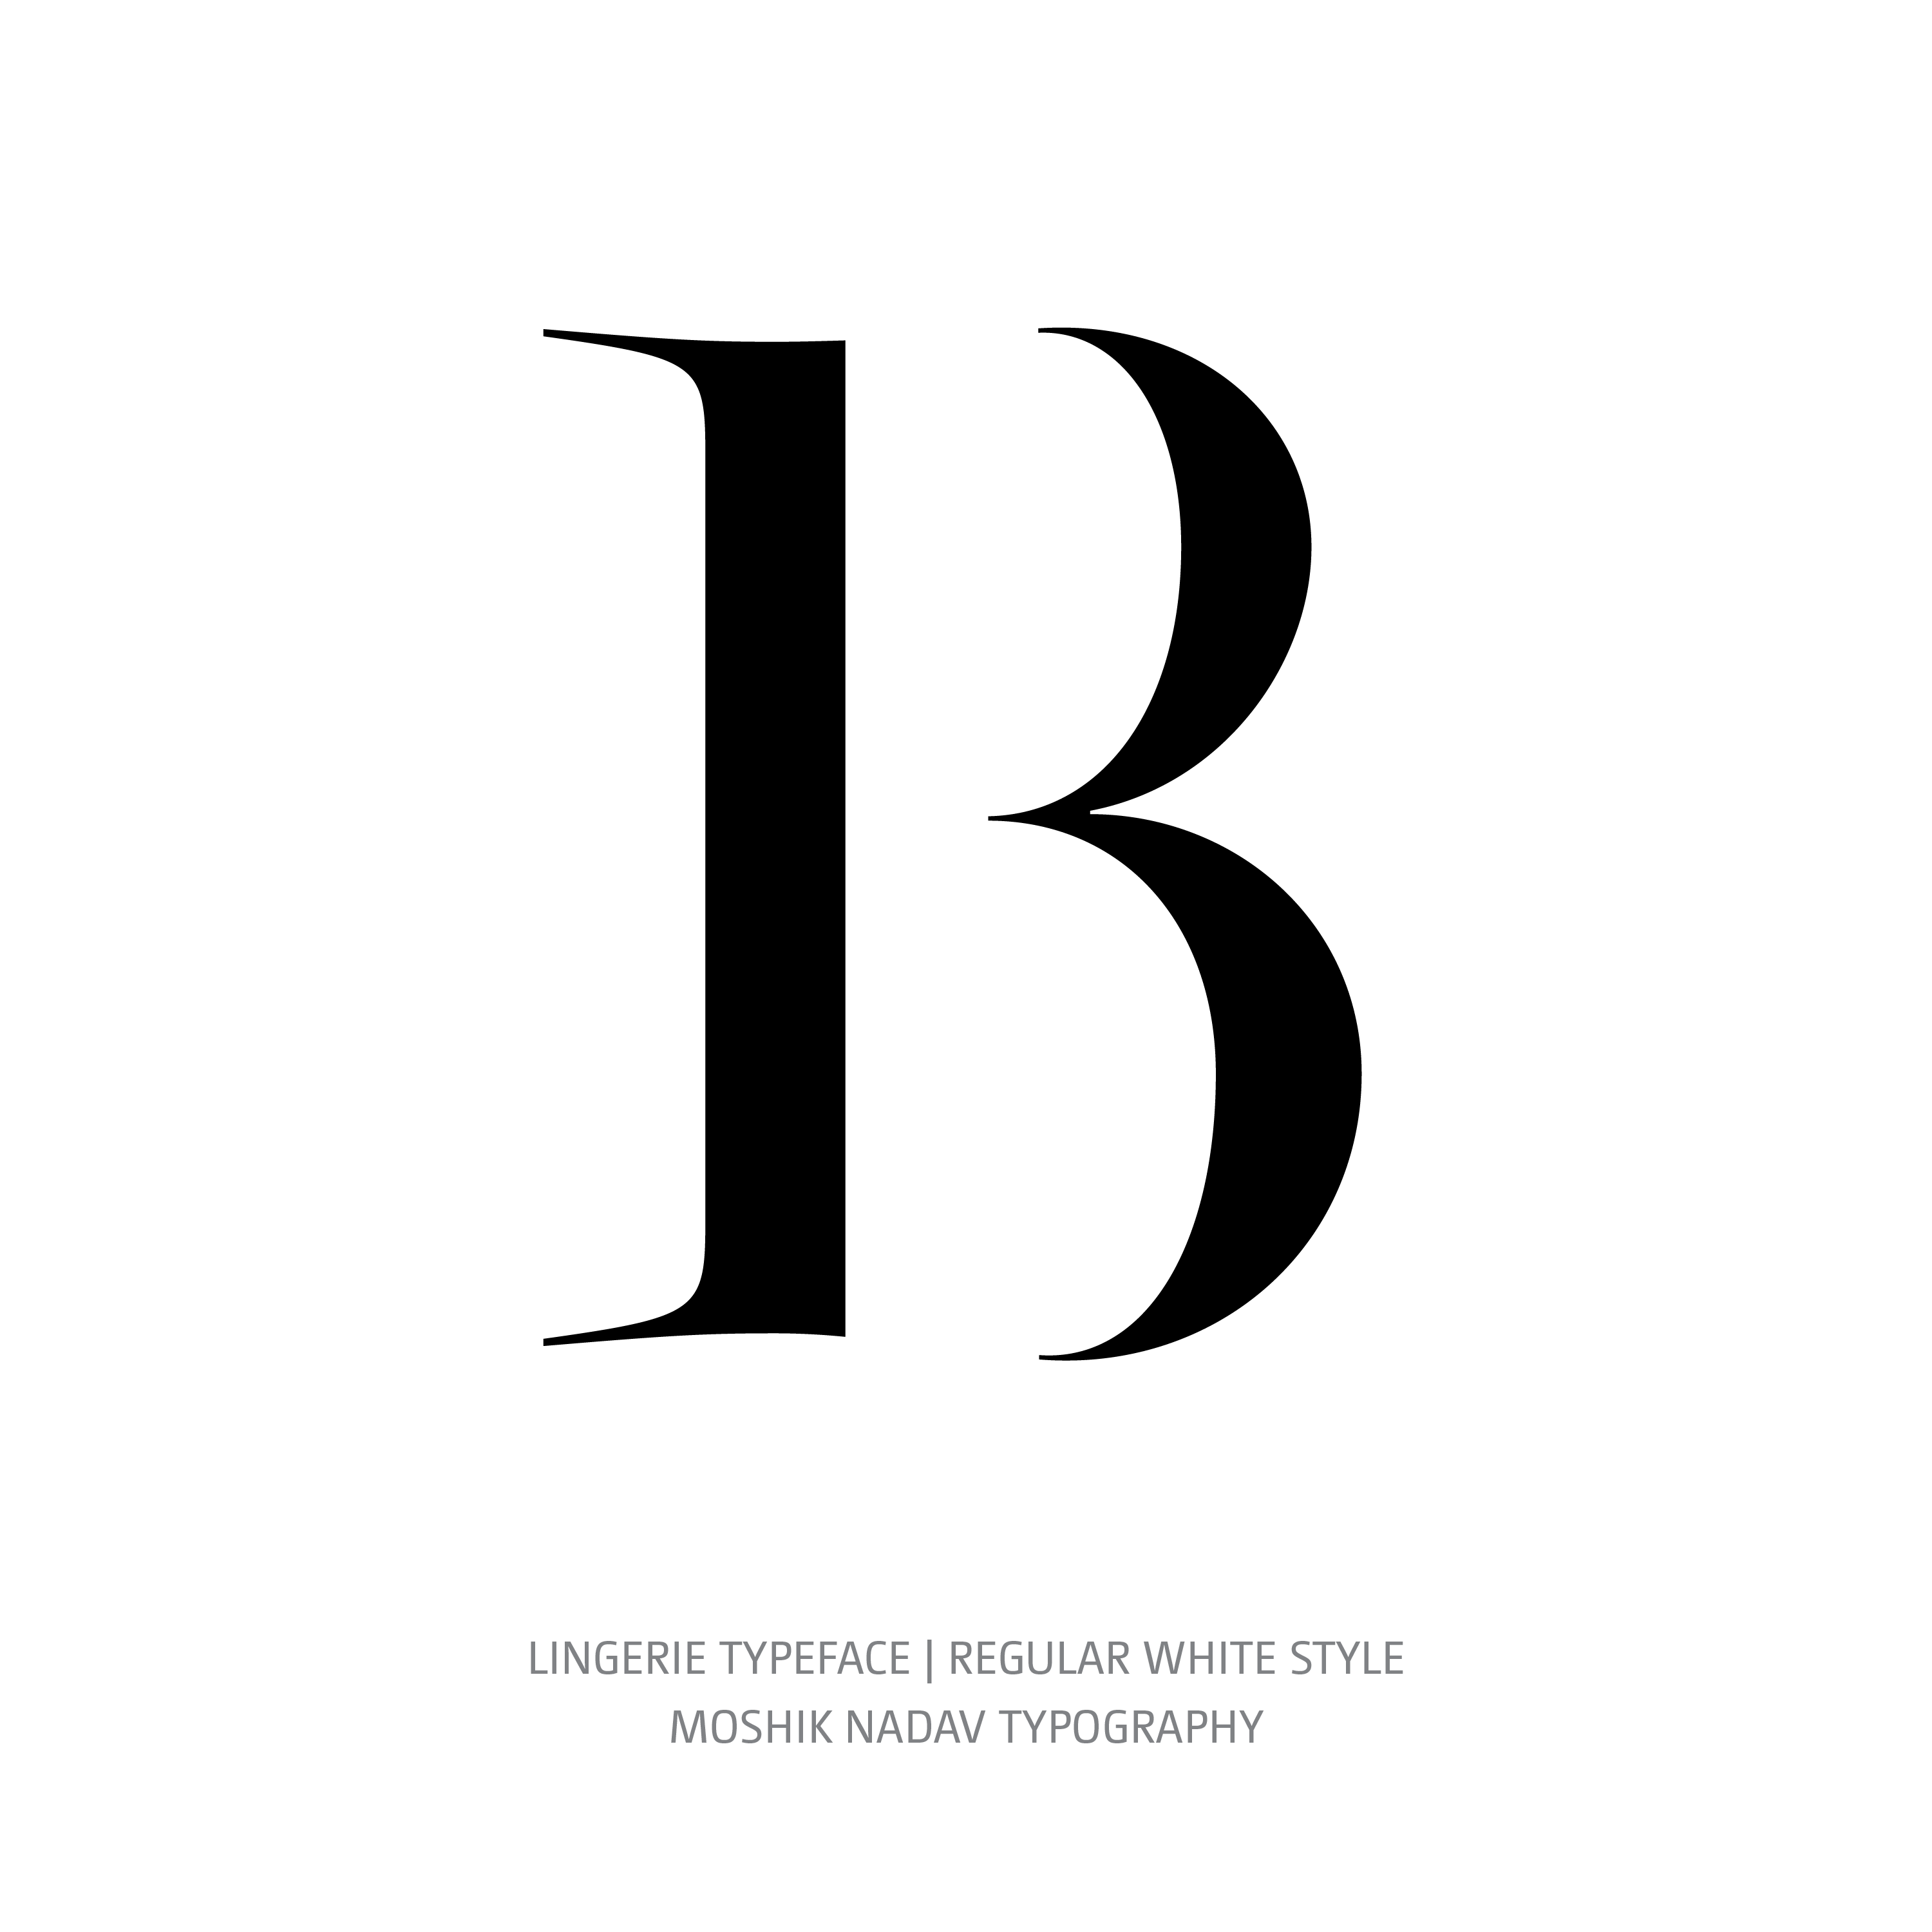 Lingerie Typeface Regular White B